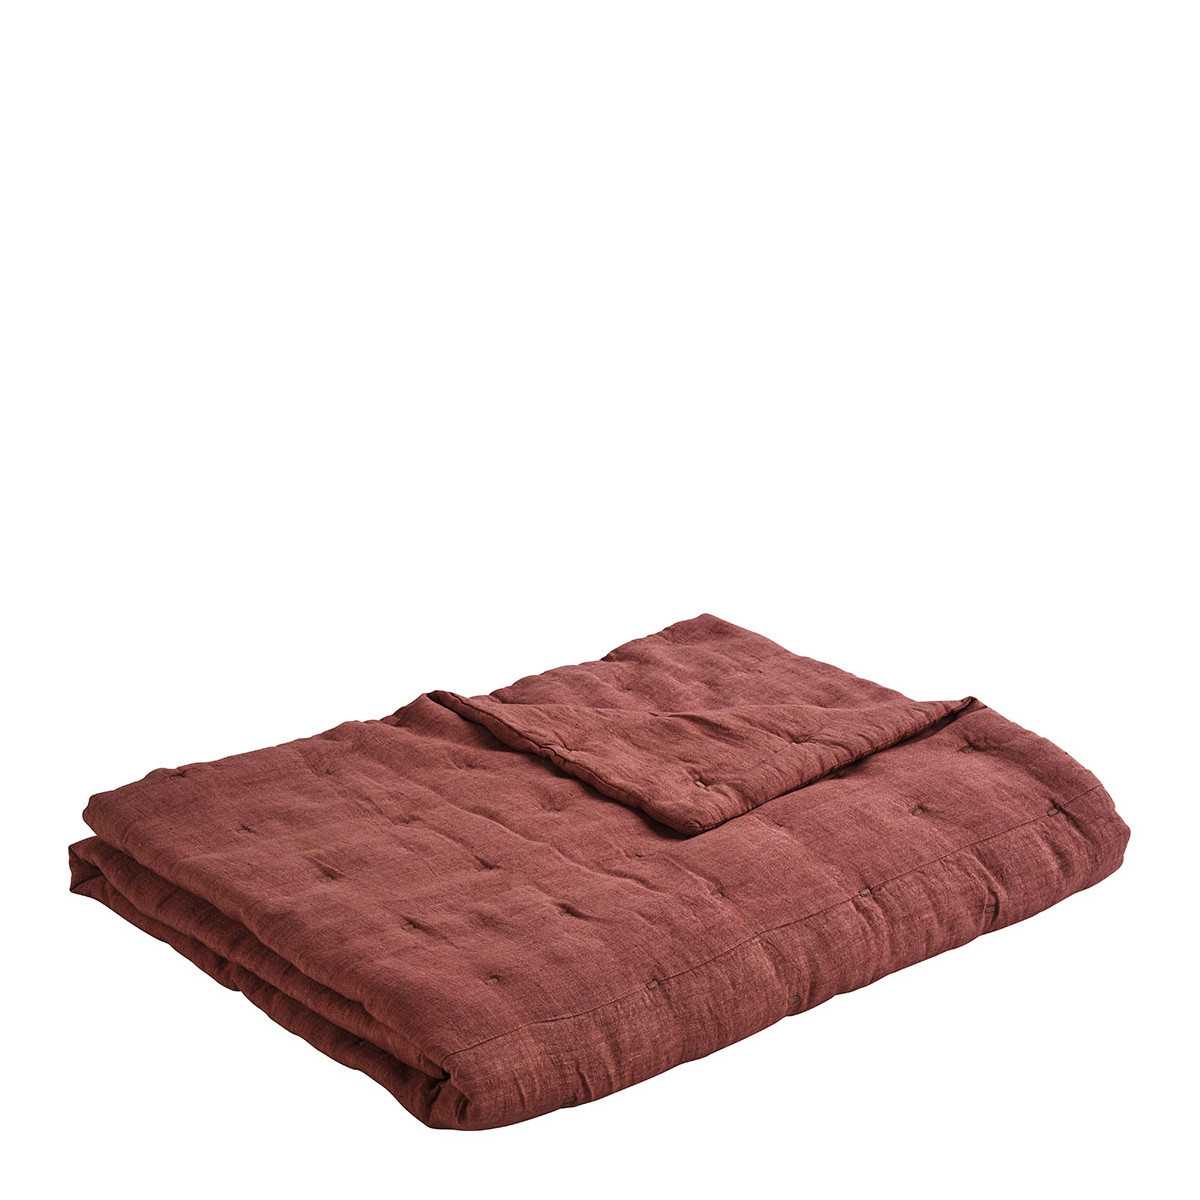 CHLOE bedspread in washed linen - Terracotta - 230 x 180 cm